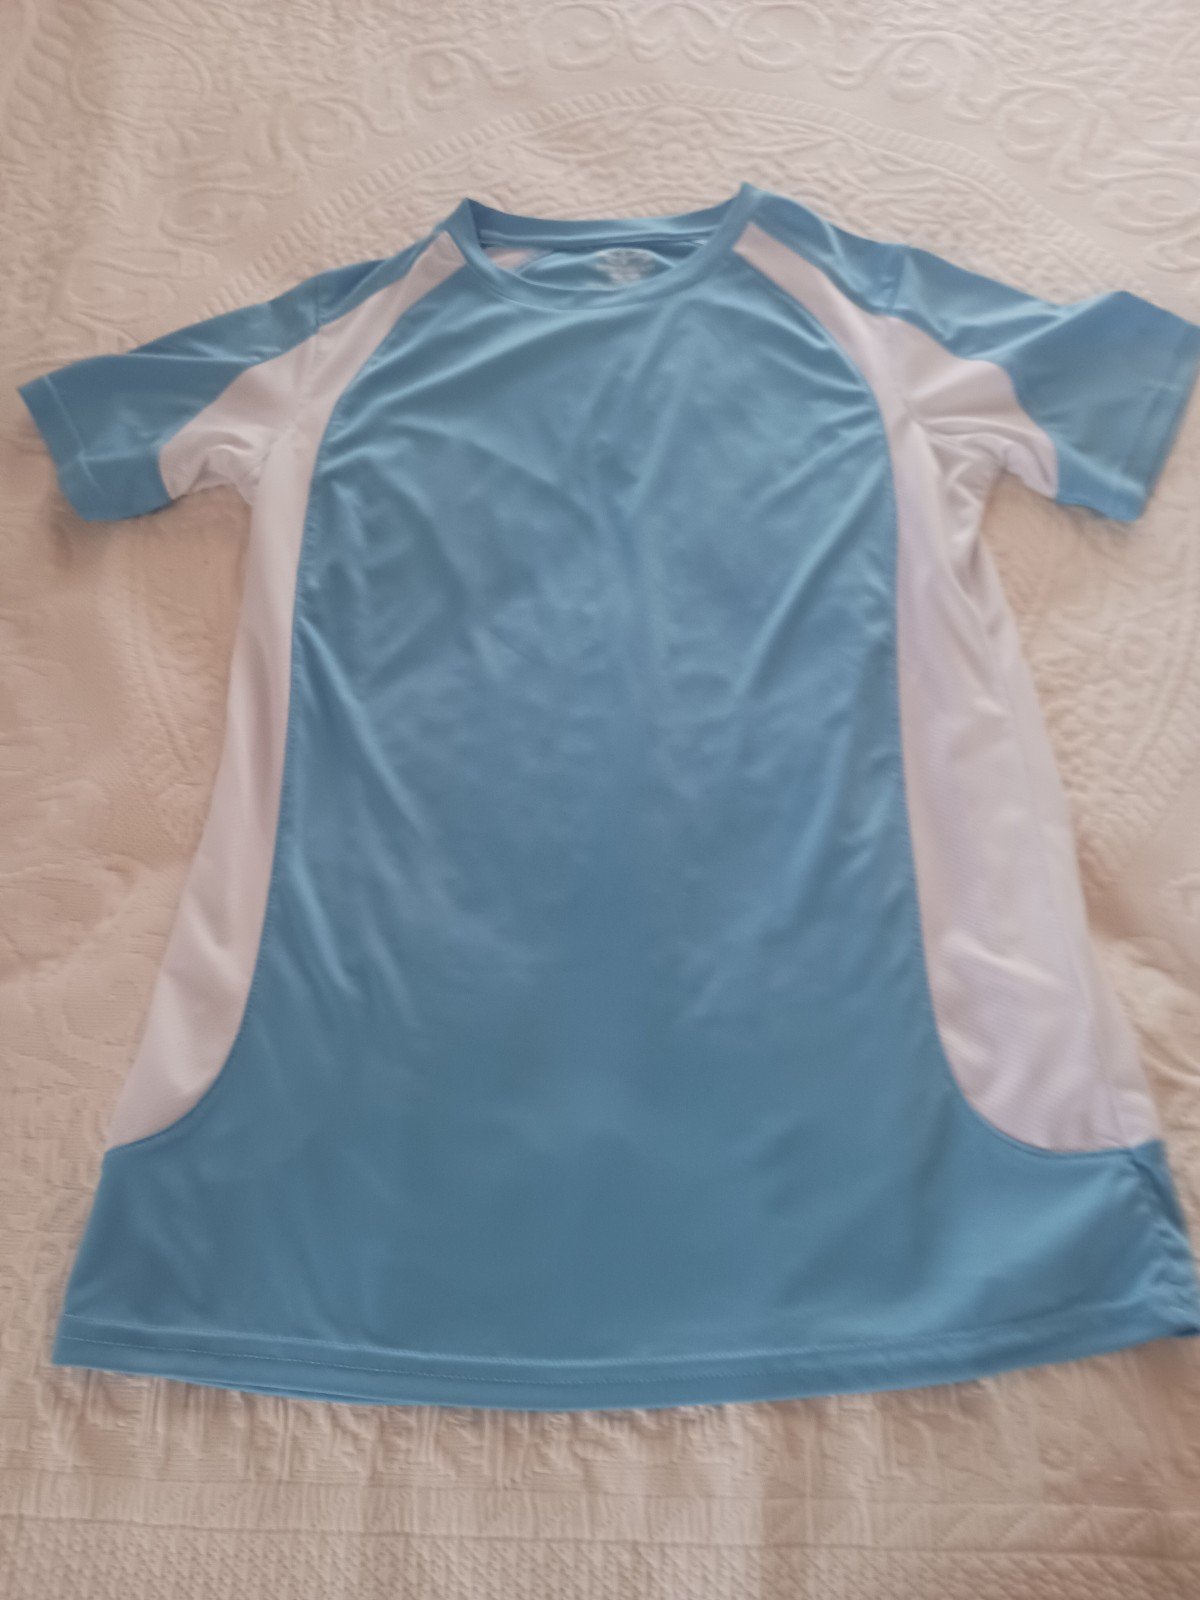 Boombah Pullover Shirt size medium NSaul7ZJ9